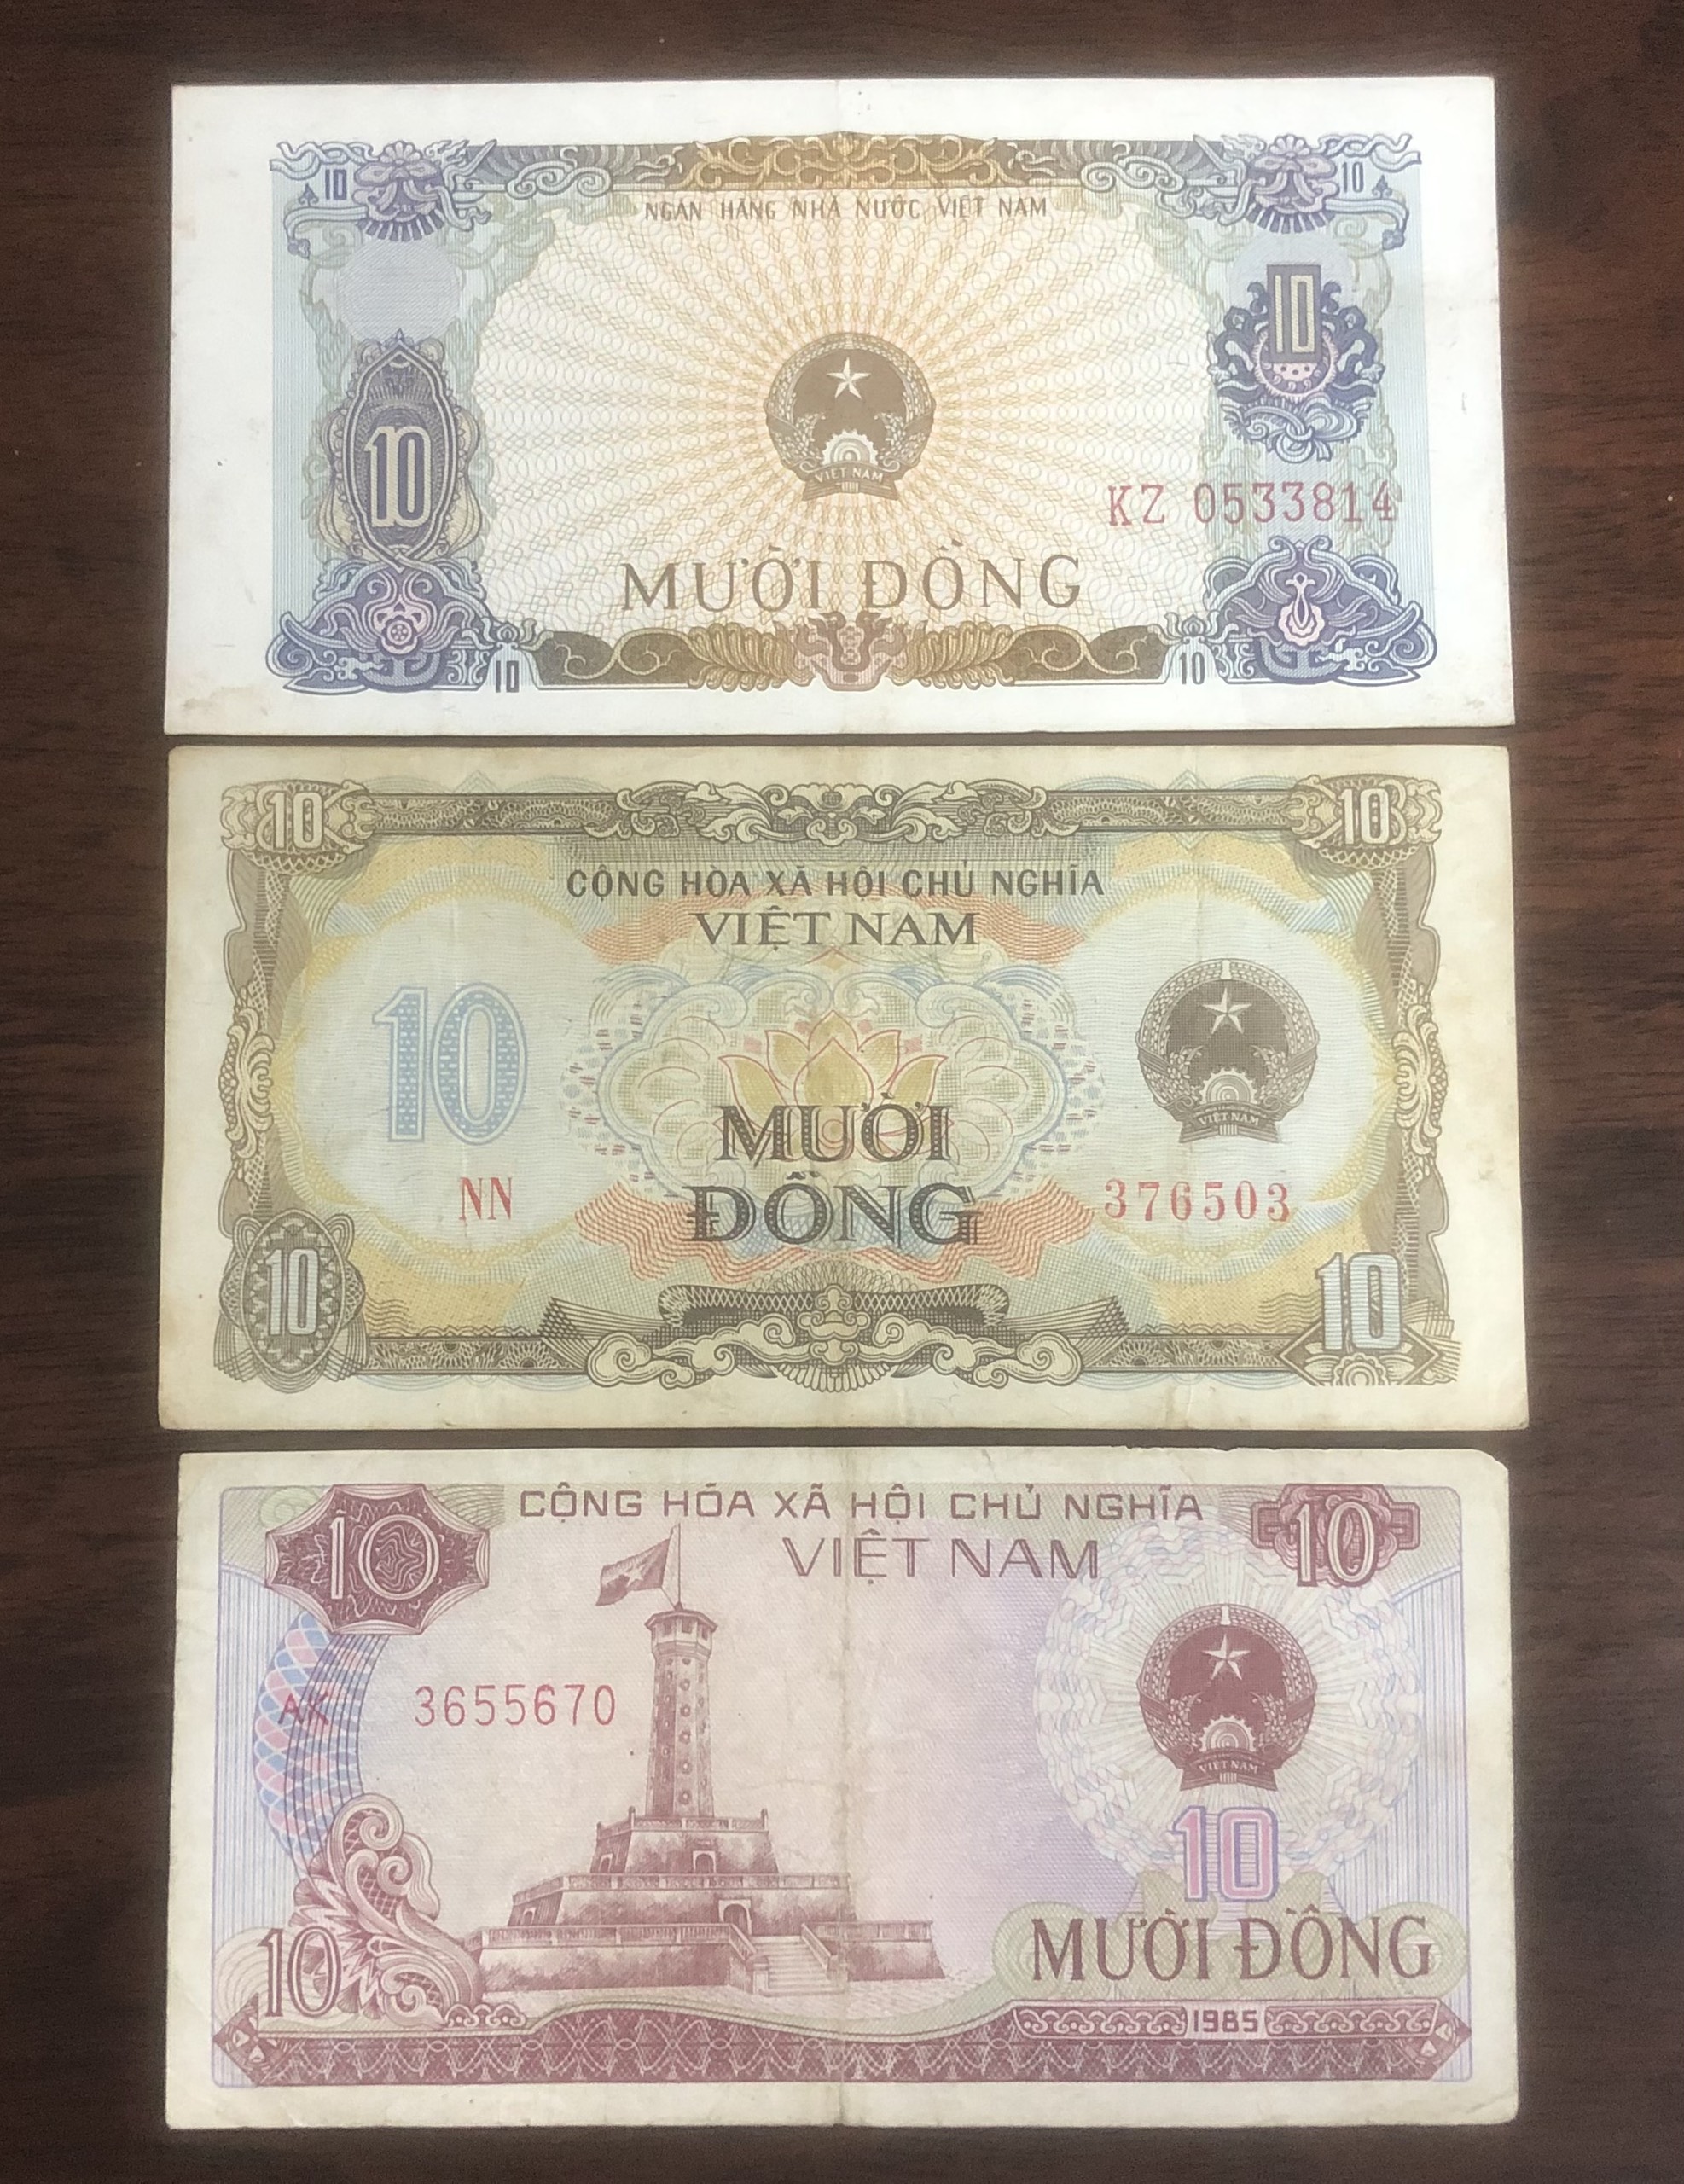 Tiền Việt Nam mệnh giá 10 đồng, 3 tờ phát hành khác giai đoạn